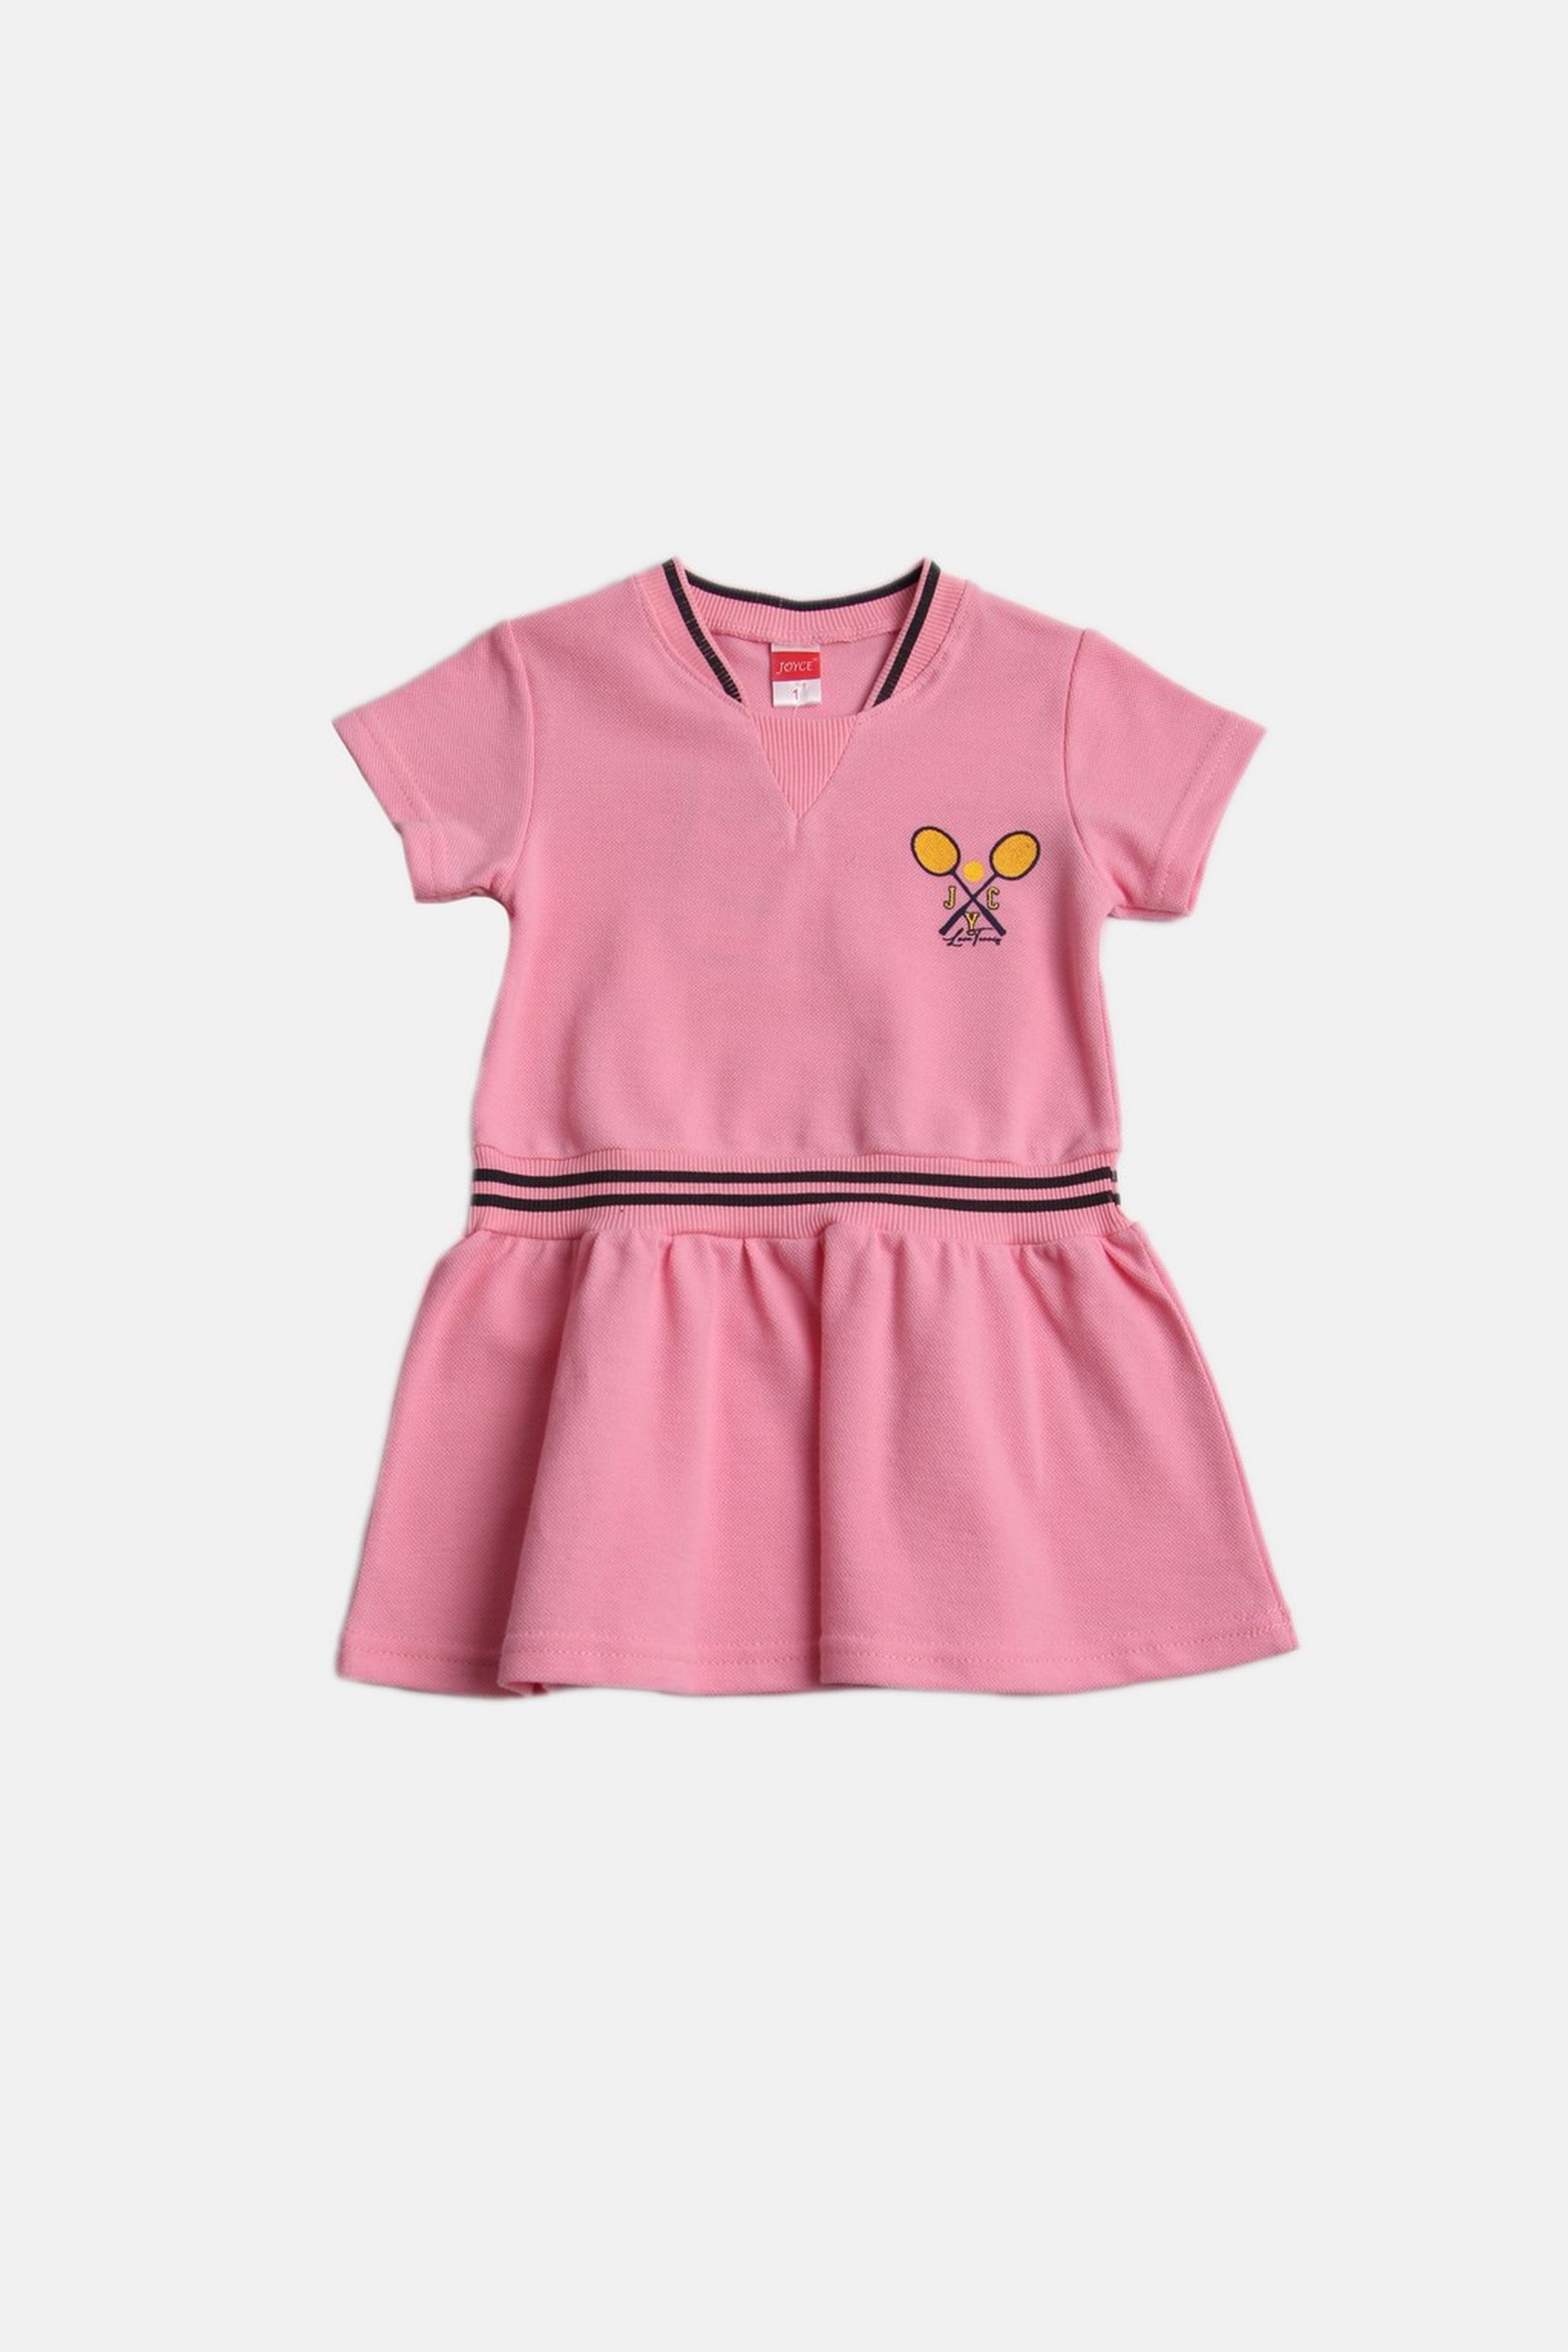 Dívčí bavlněné šaty "LOVE TENNIS"/Růžová Barva: Růžová, Velikost: vel. 1 (78/86 cm)